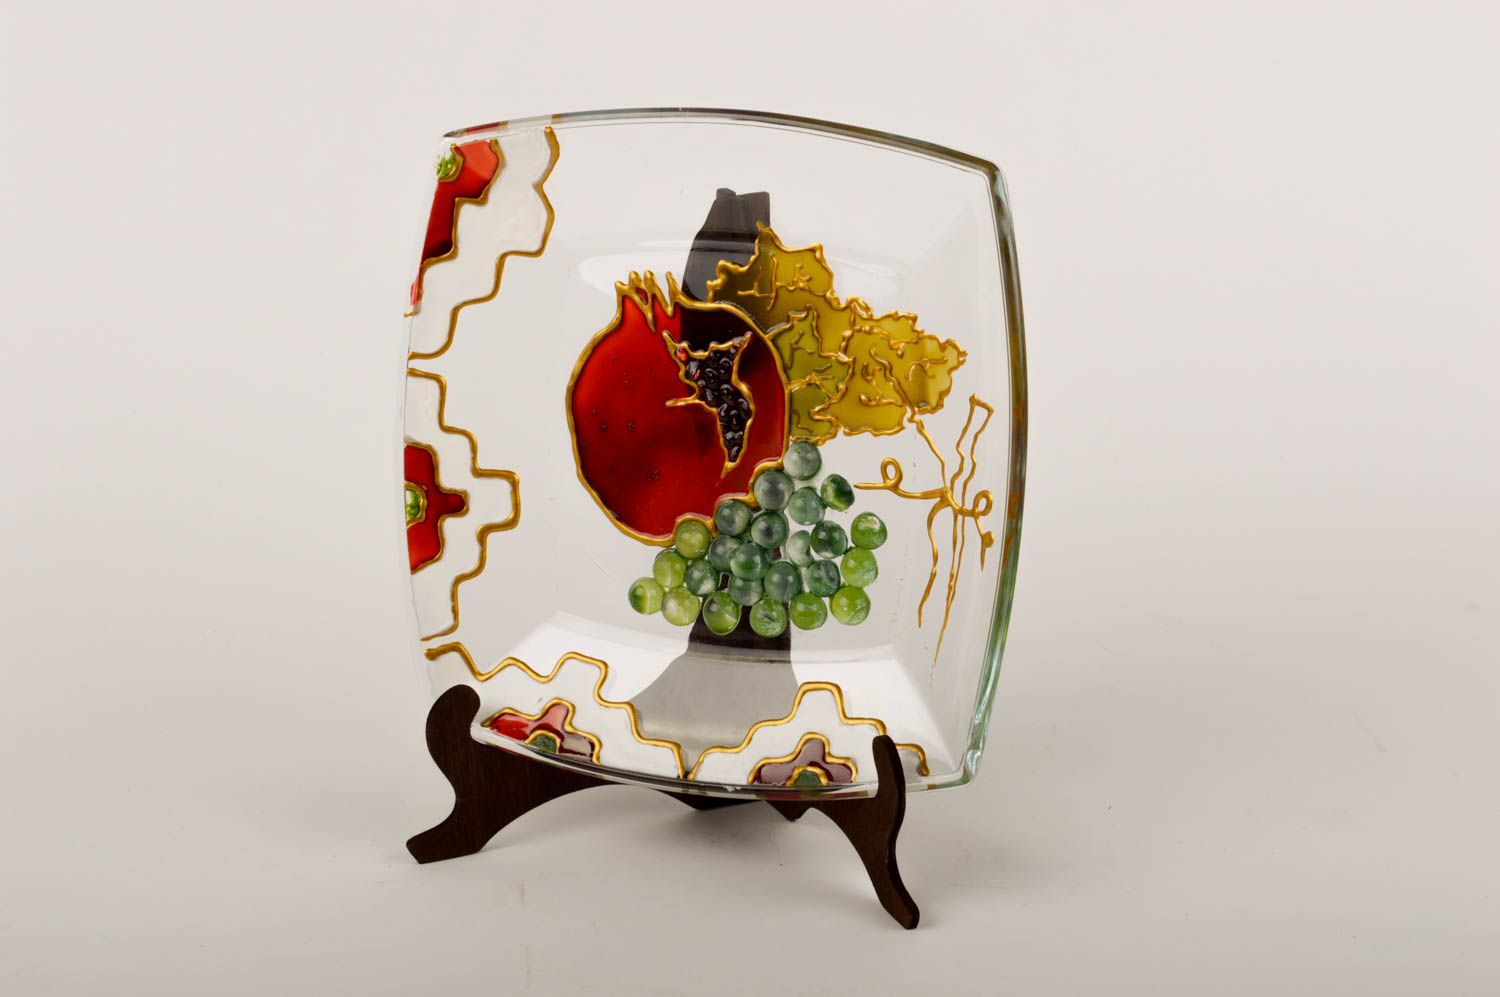 Teller Glas handmade Geschirr Glas Geschenk Idee Haus Dekor bemalt grell schön foto 1